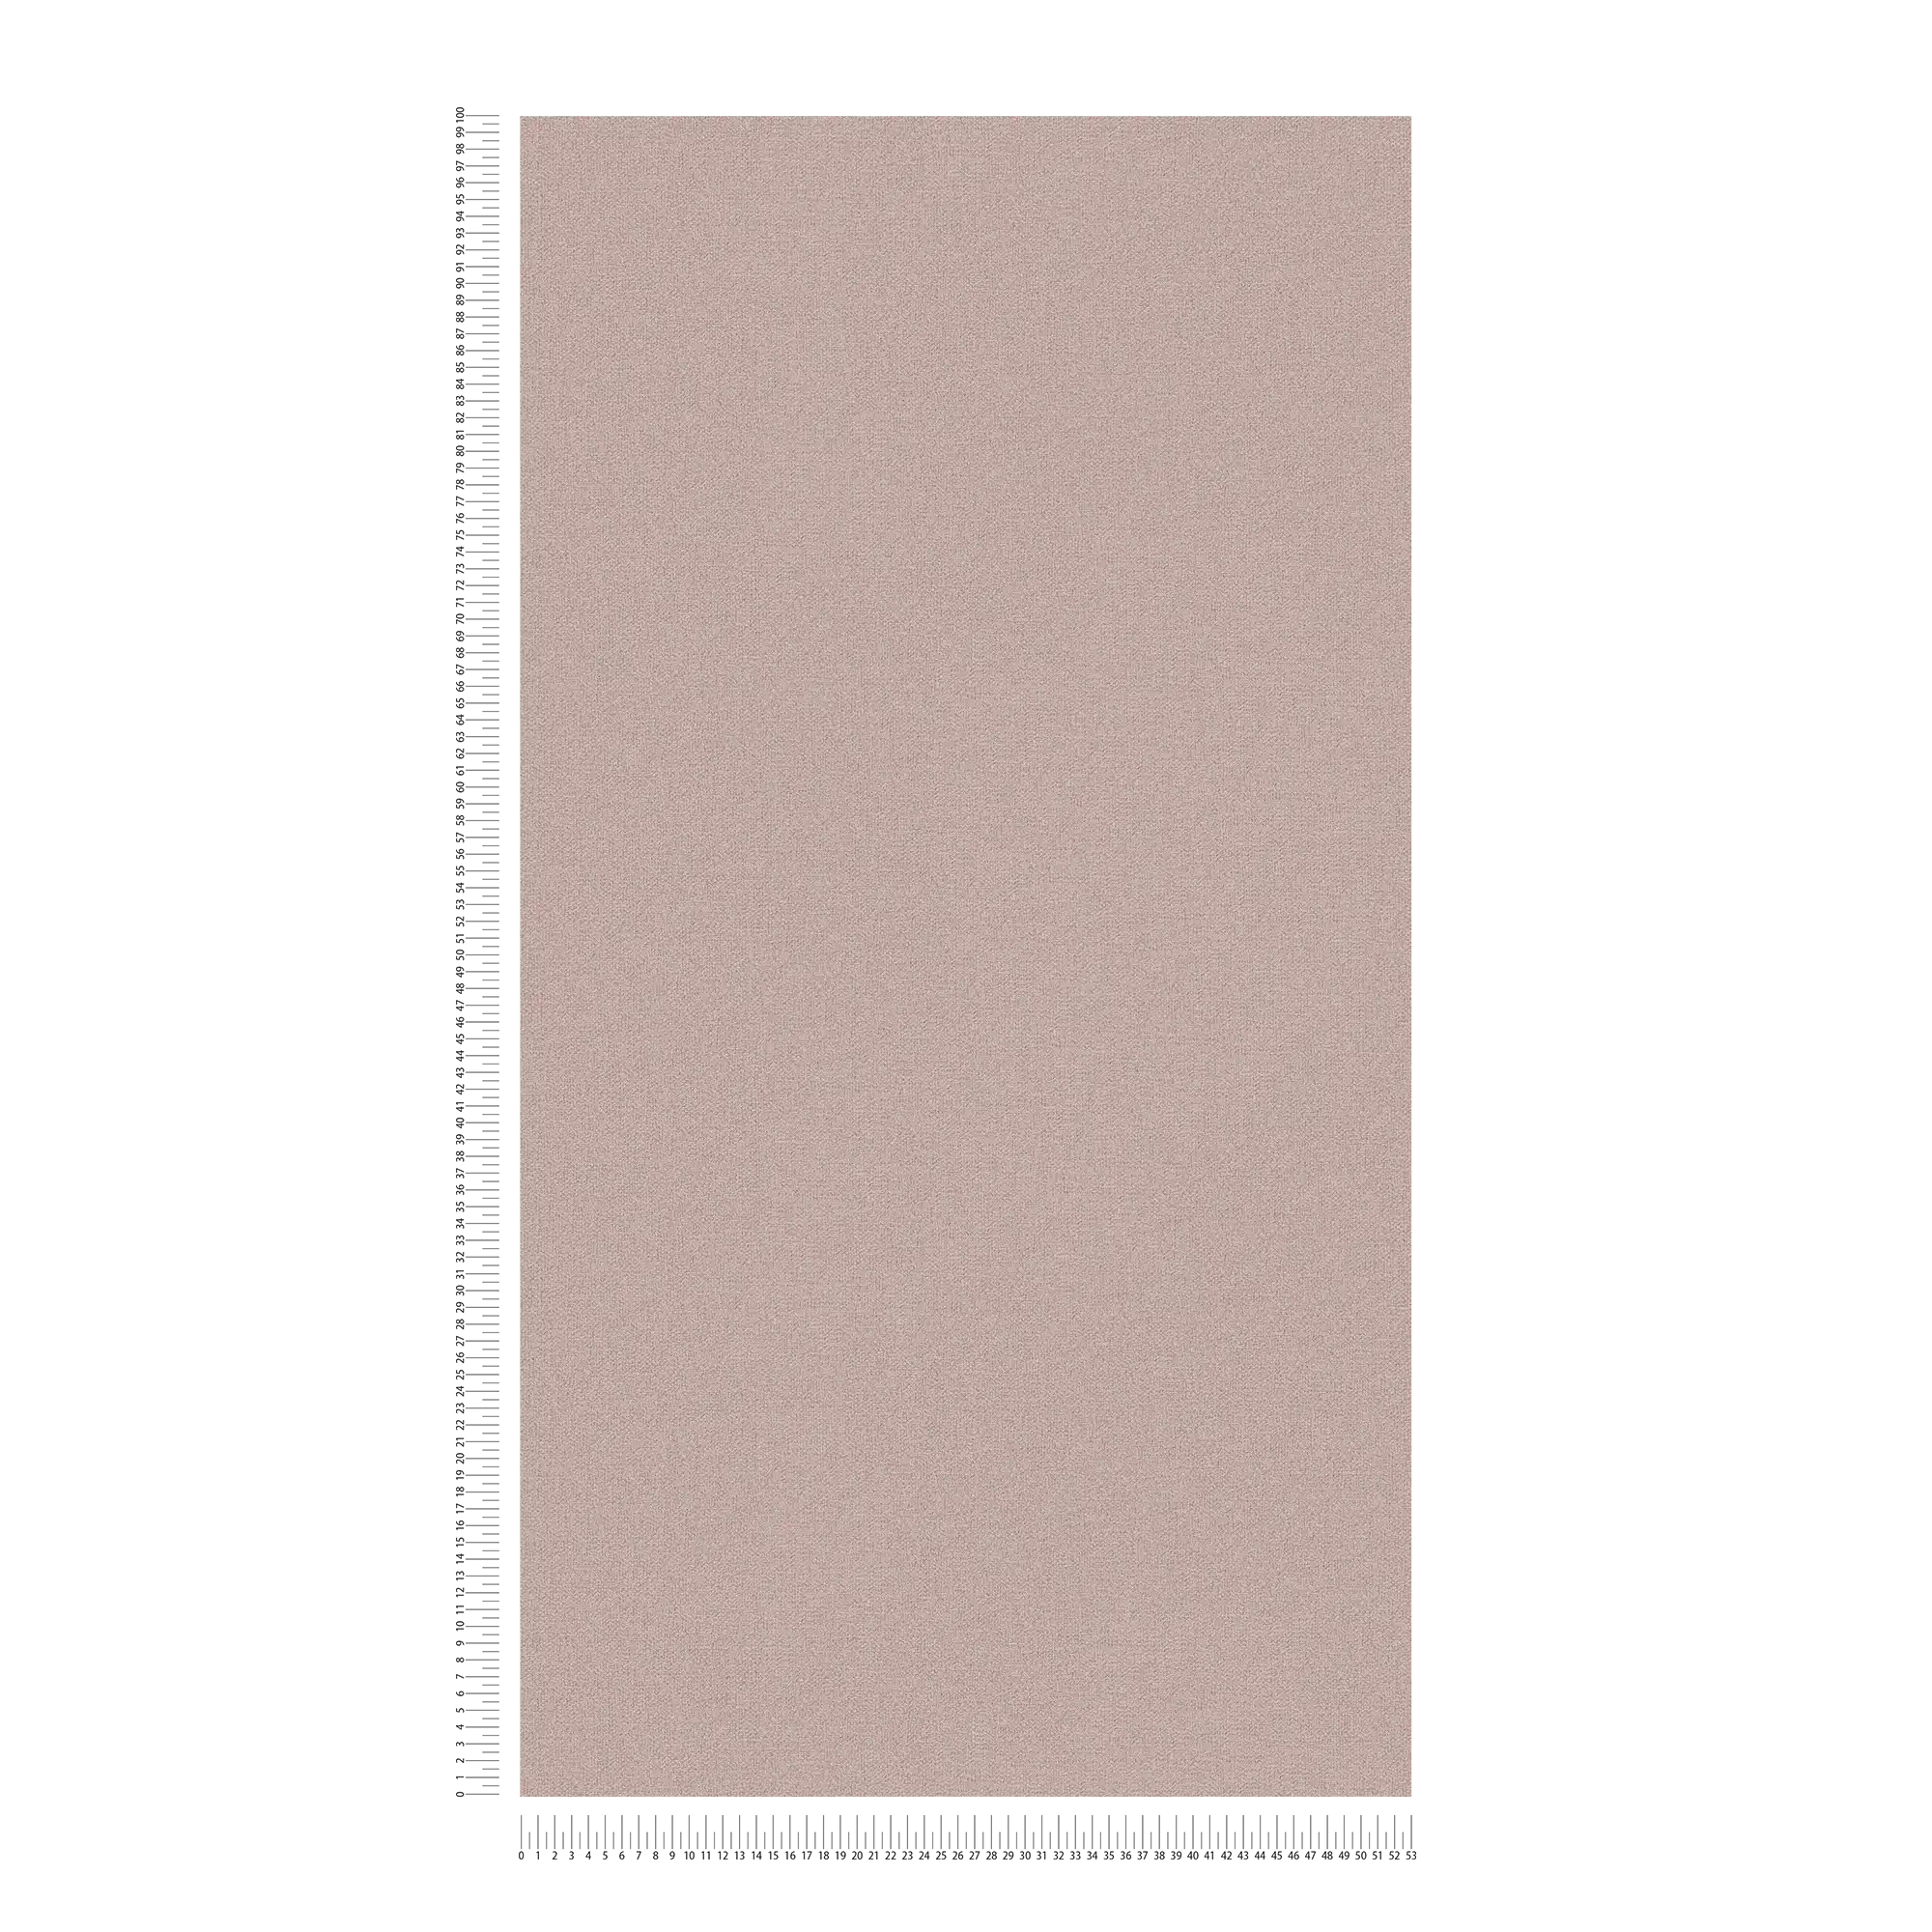             Papier peint intissé uni structure lin - gris, marron, gris
        